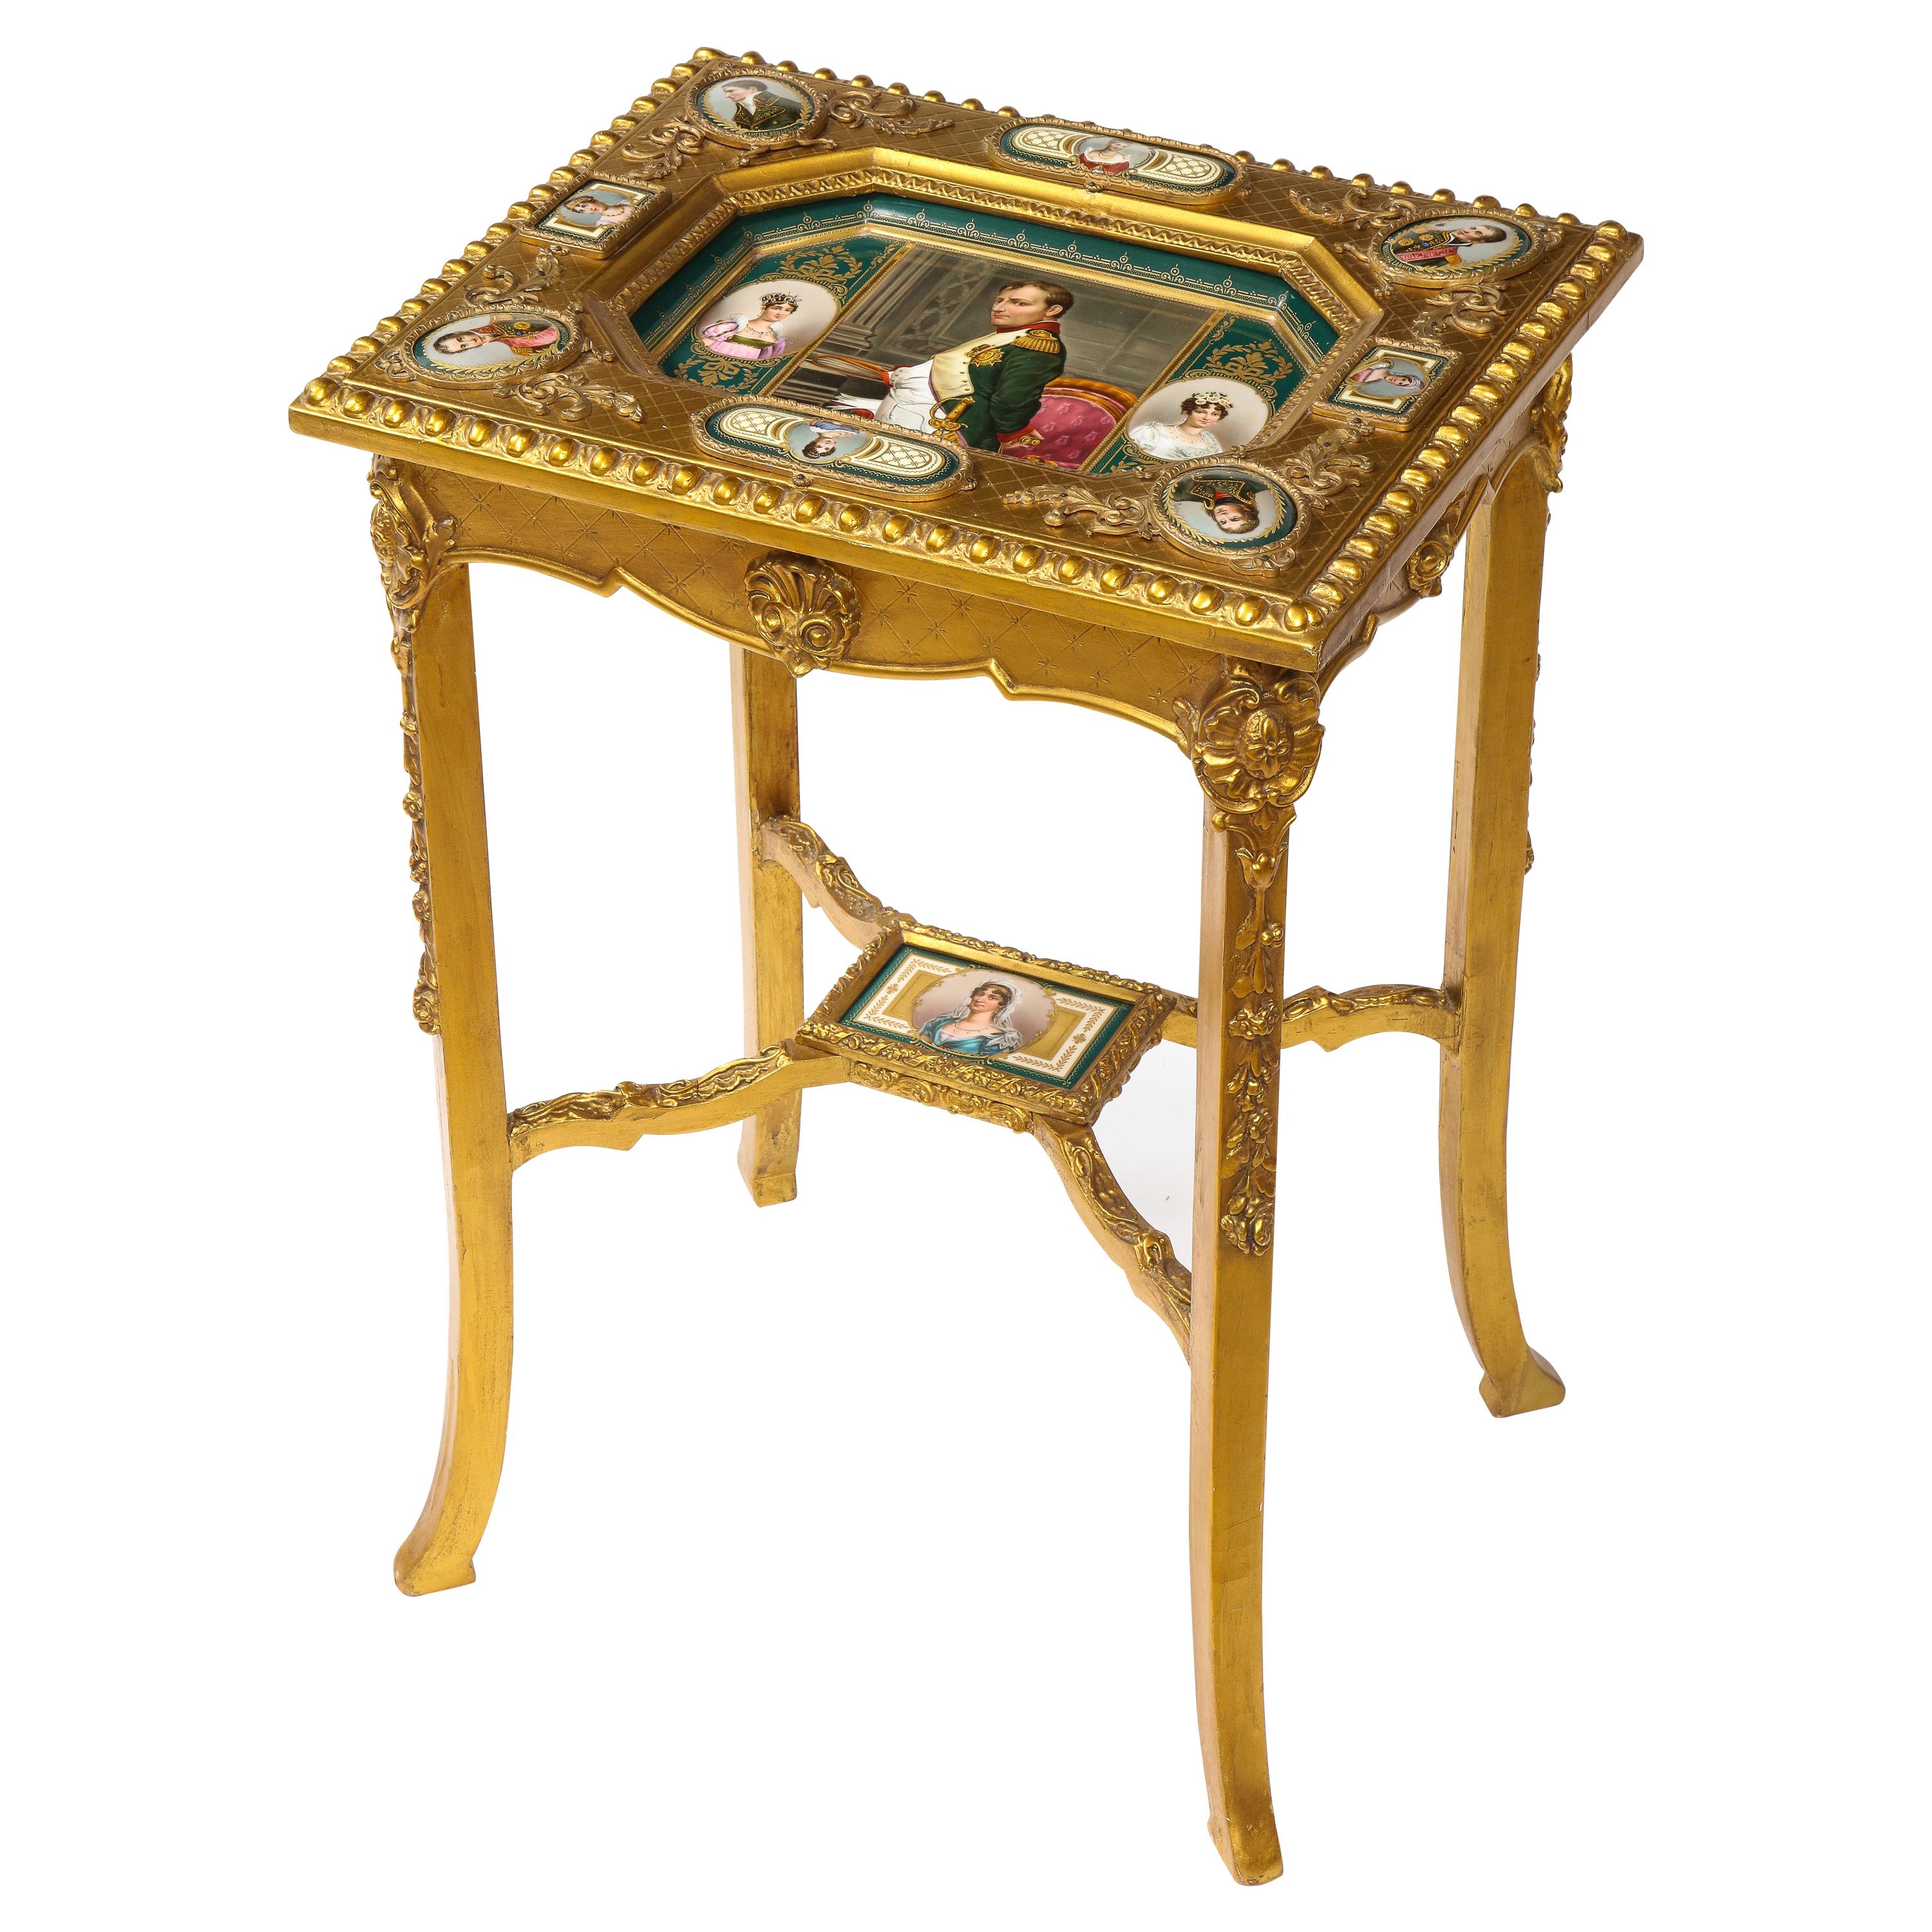 Table d'appoint en bois doré de Vienne royale napoléonienne du 19ème siècle avec plaques de porcelaine incrustées